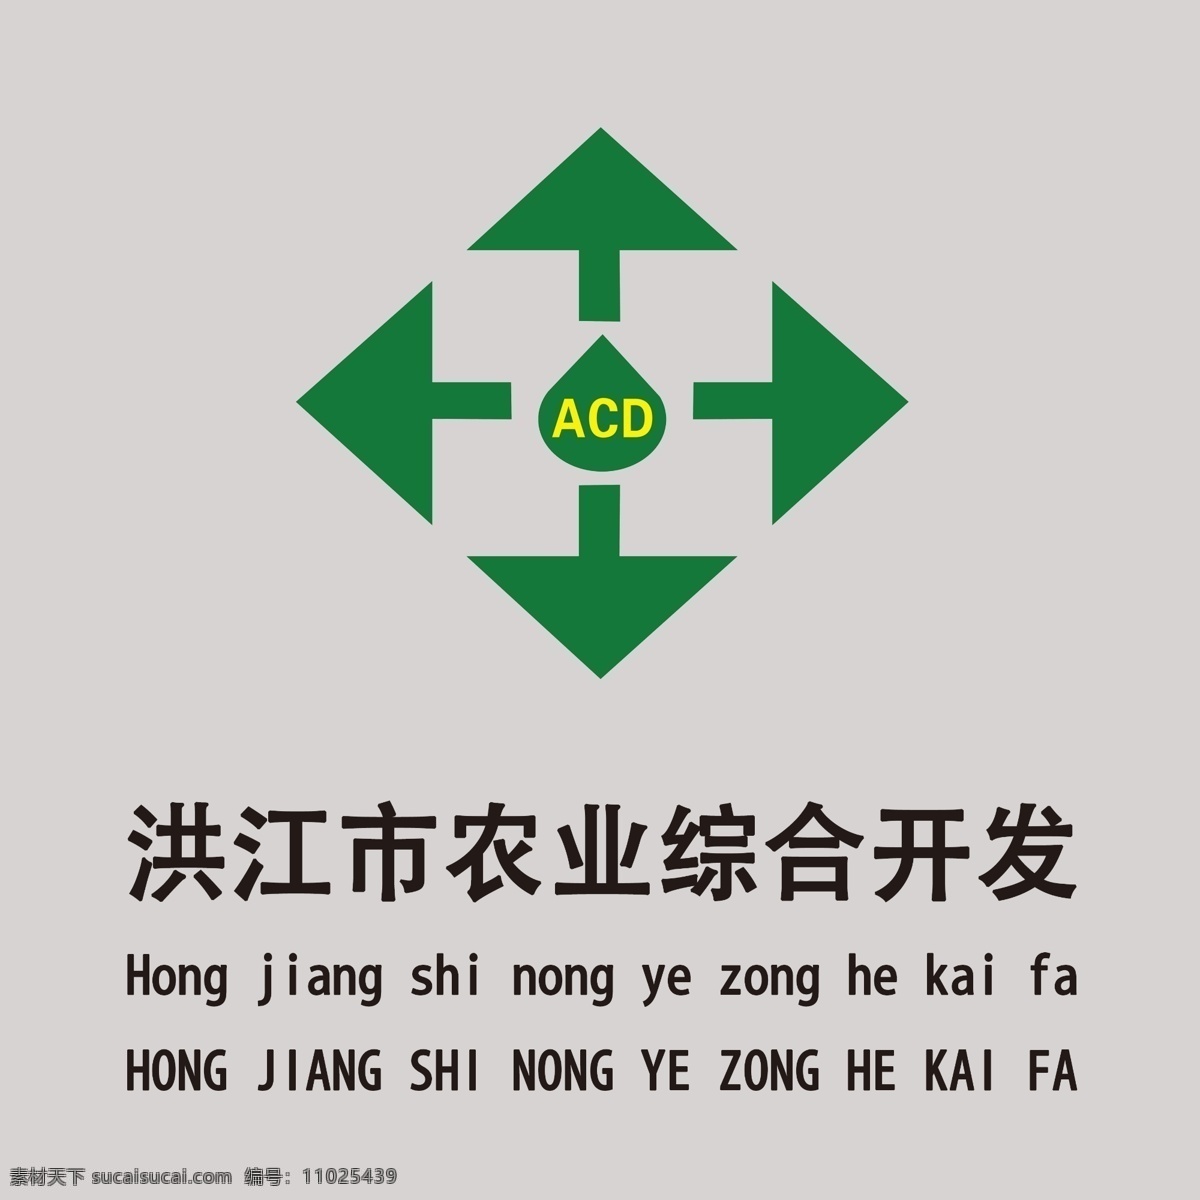 洪江市 农业 综合 开发 农业综合开发 农业综合标志 标志设计 广告设计模板 源文件